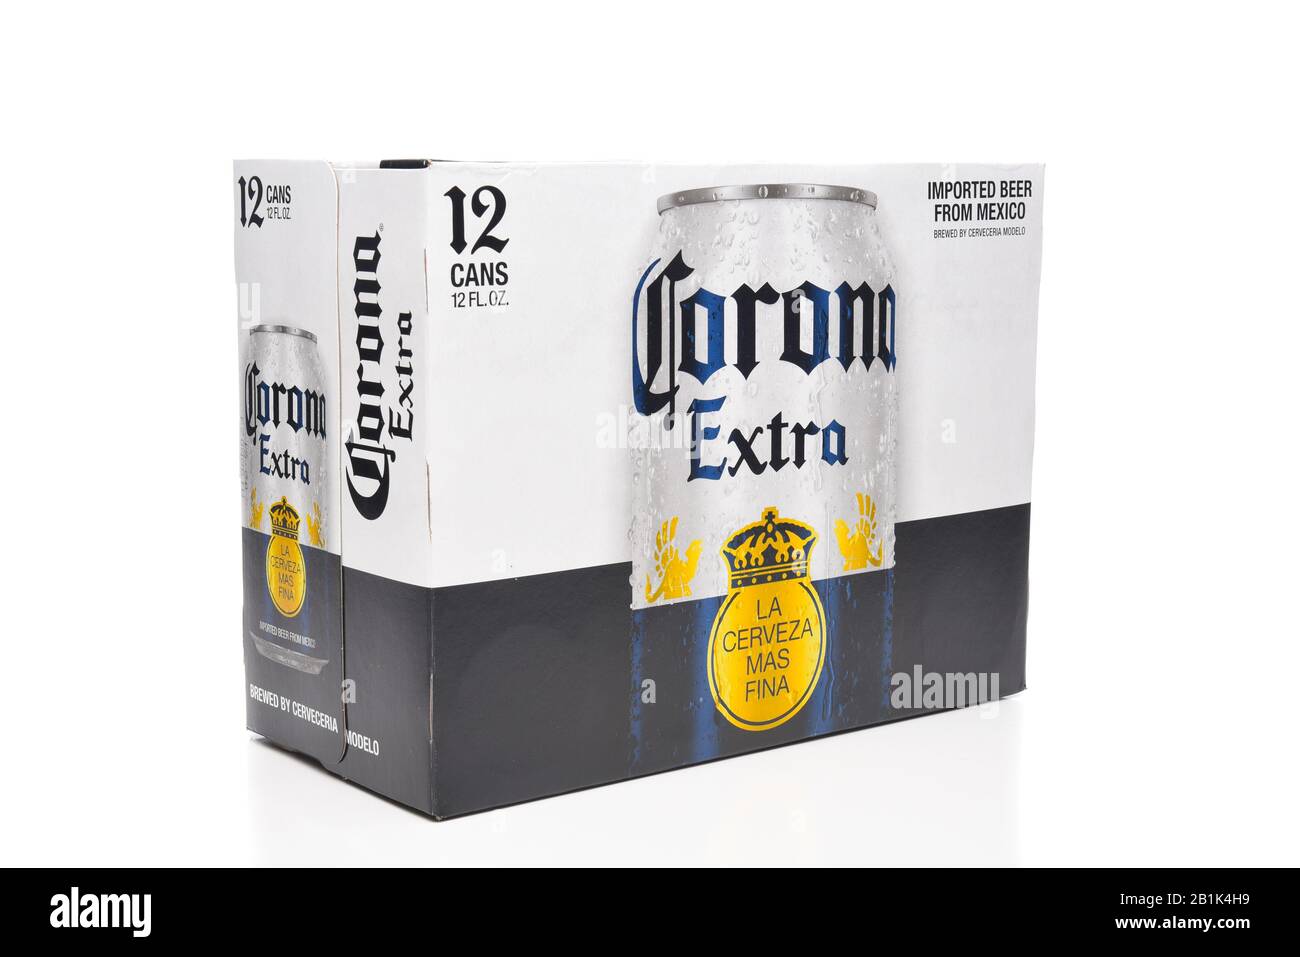 Irvine, CALIFORNIE - 21 MARS 2018: 12 boîtes de bière Corona Extra. Corona est la bière importée la plus populaire aux États-Unis. Banque D'Images